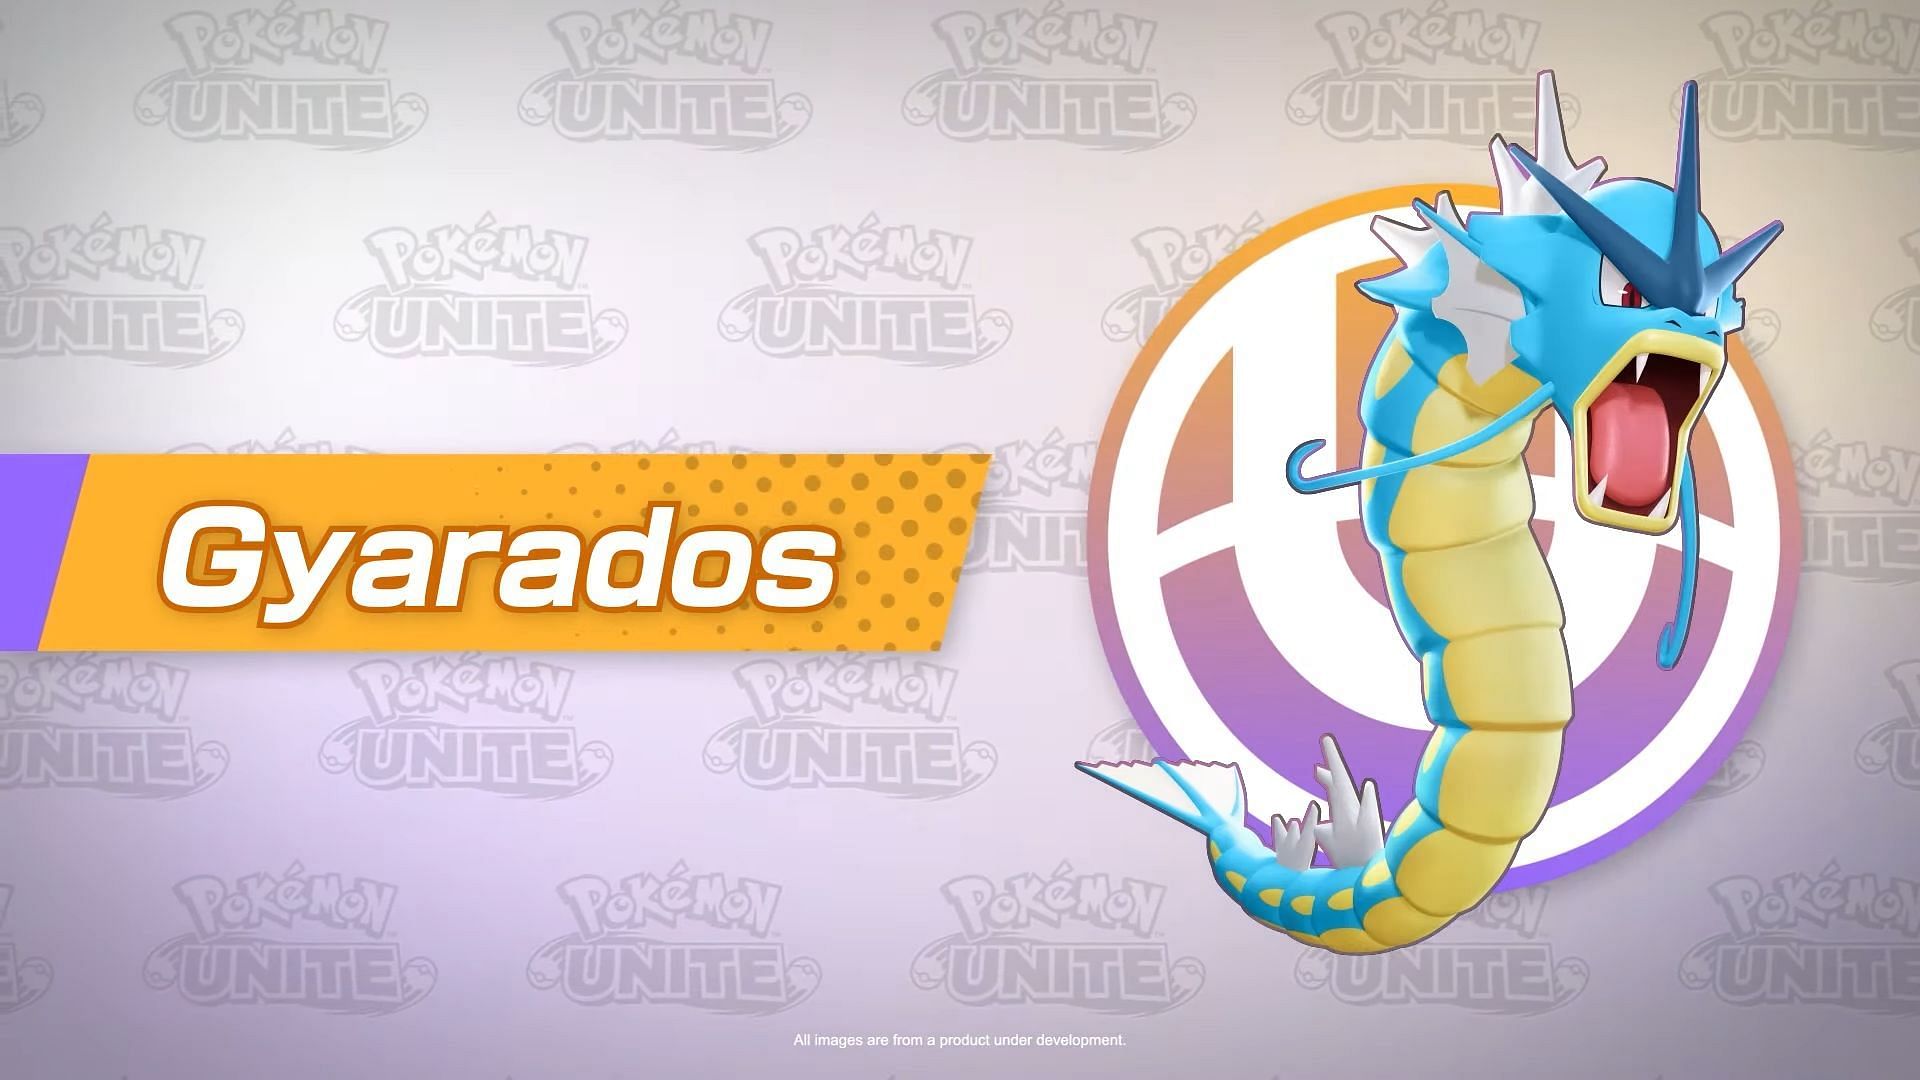 Gyarados character spotlight (Image via The Pokemon Company)